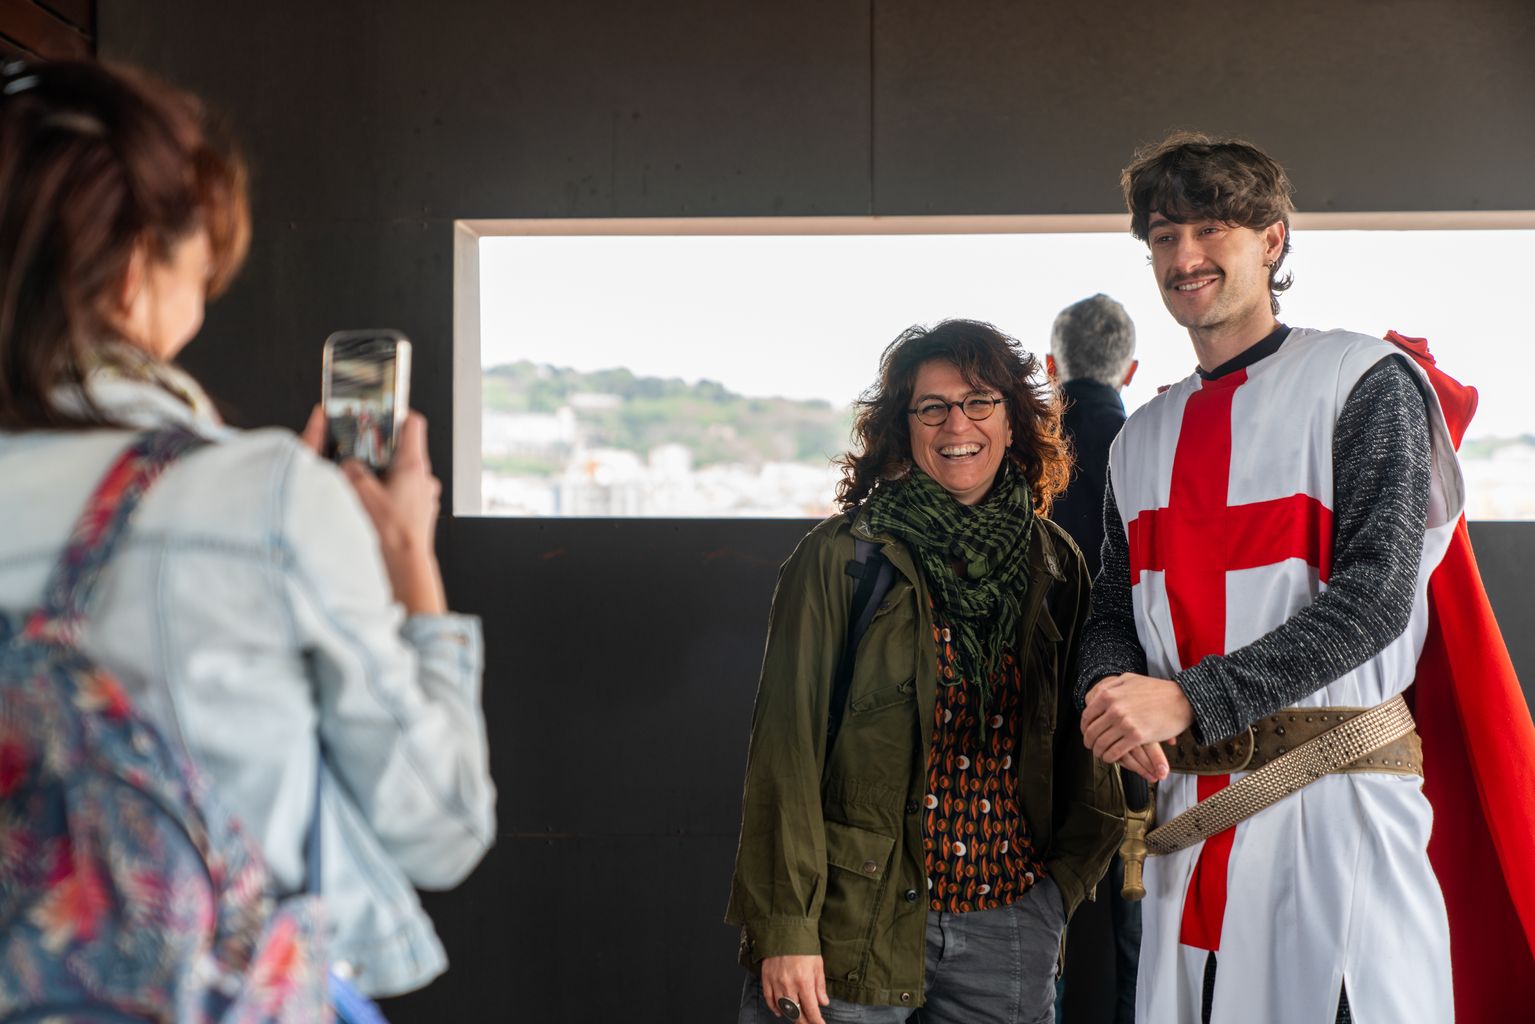 Un actor vestit de sant Jordi es fotografia amb els assistents durant la jornada de portes obertes de l’Ajuntament de Barcelona amb motiu de la diada de Sant Jordi. Fan fotografies des del mirador de Maria Aurèlia Capmany.